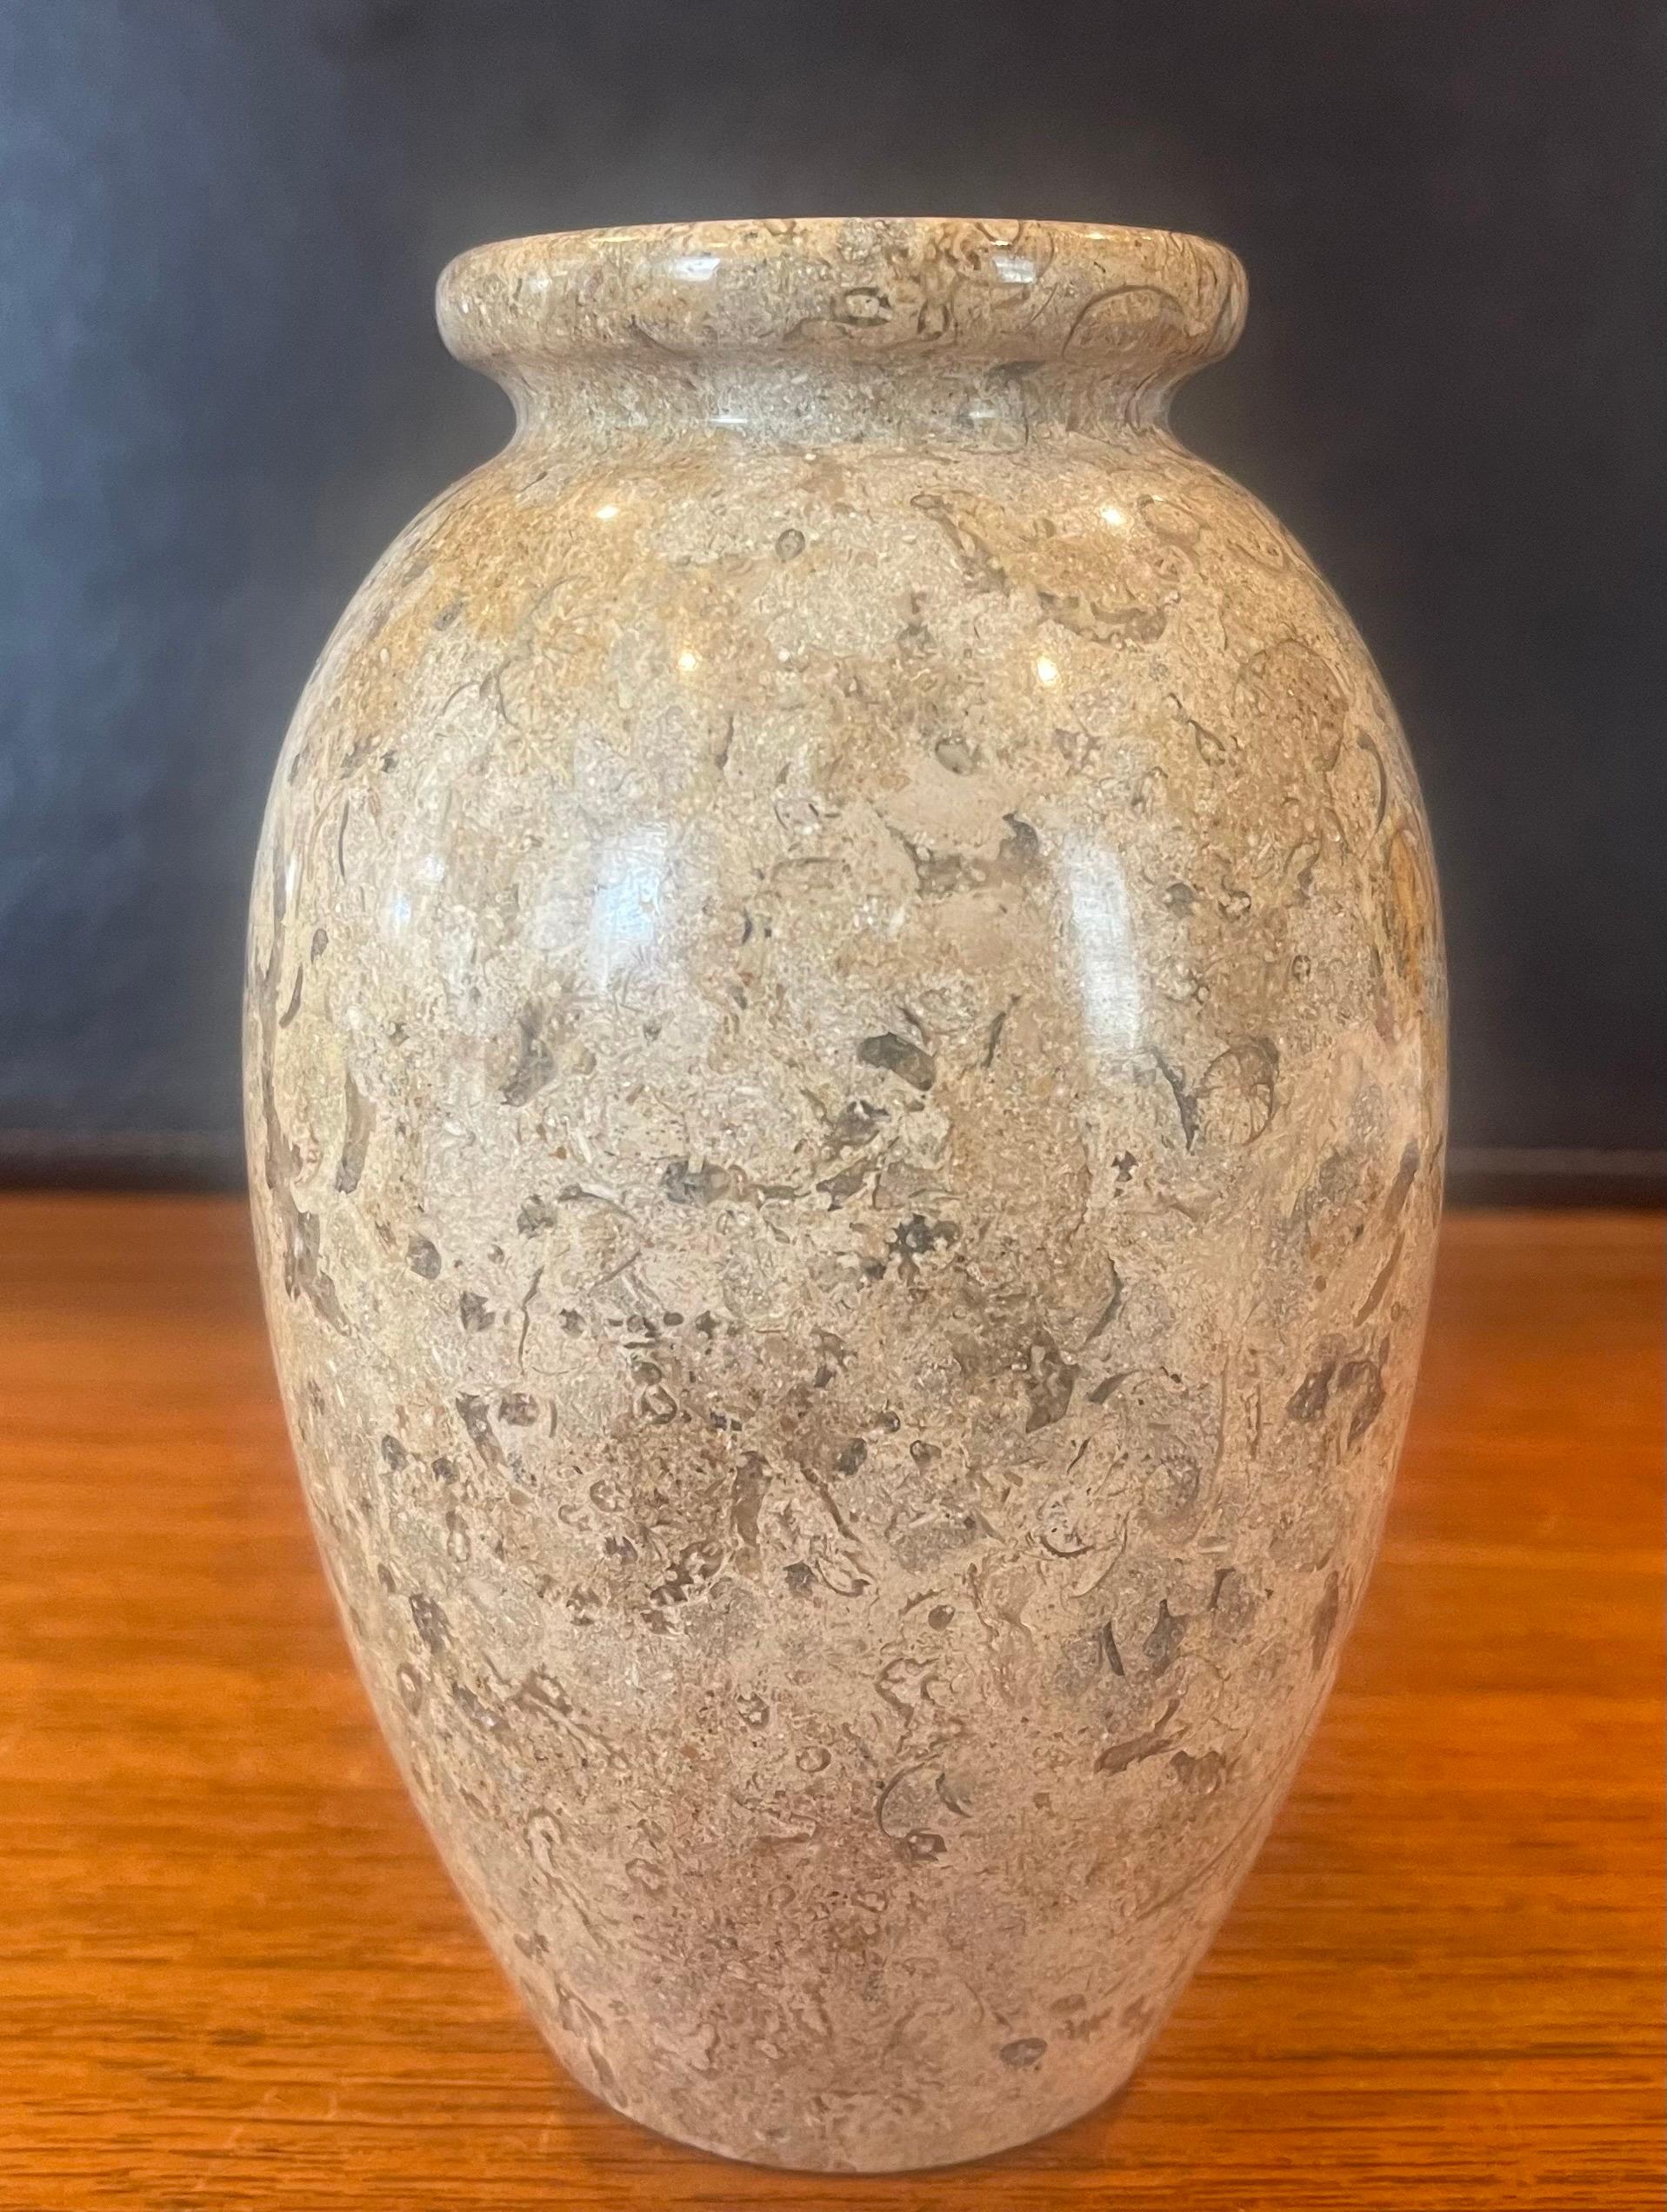 Petit vase en marbre italien post-moderne, vers les années 1980. Le vase est principalement de couleur havane foncé, mais il présente des veines de couleur crème, noire et grise. Le vase est en très bon état vintage, sans éclats ni fissures, et